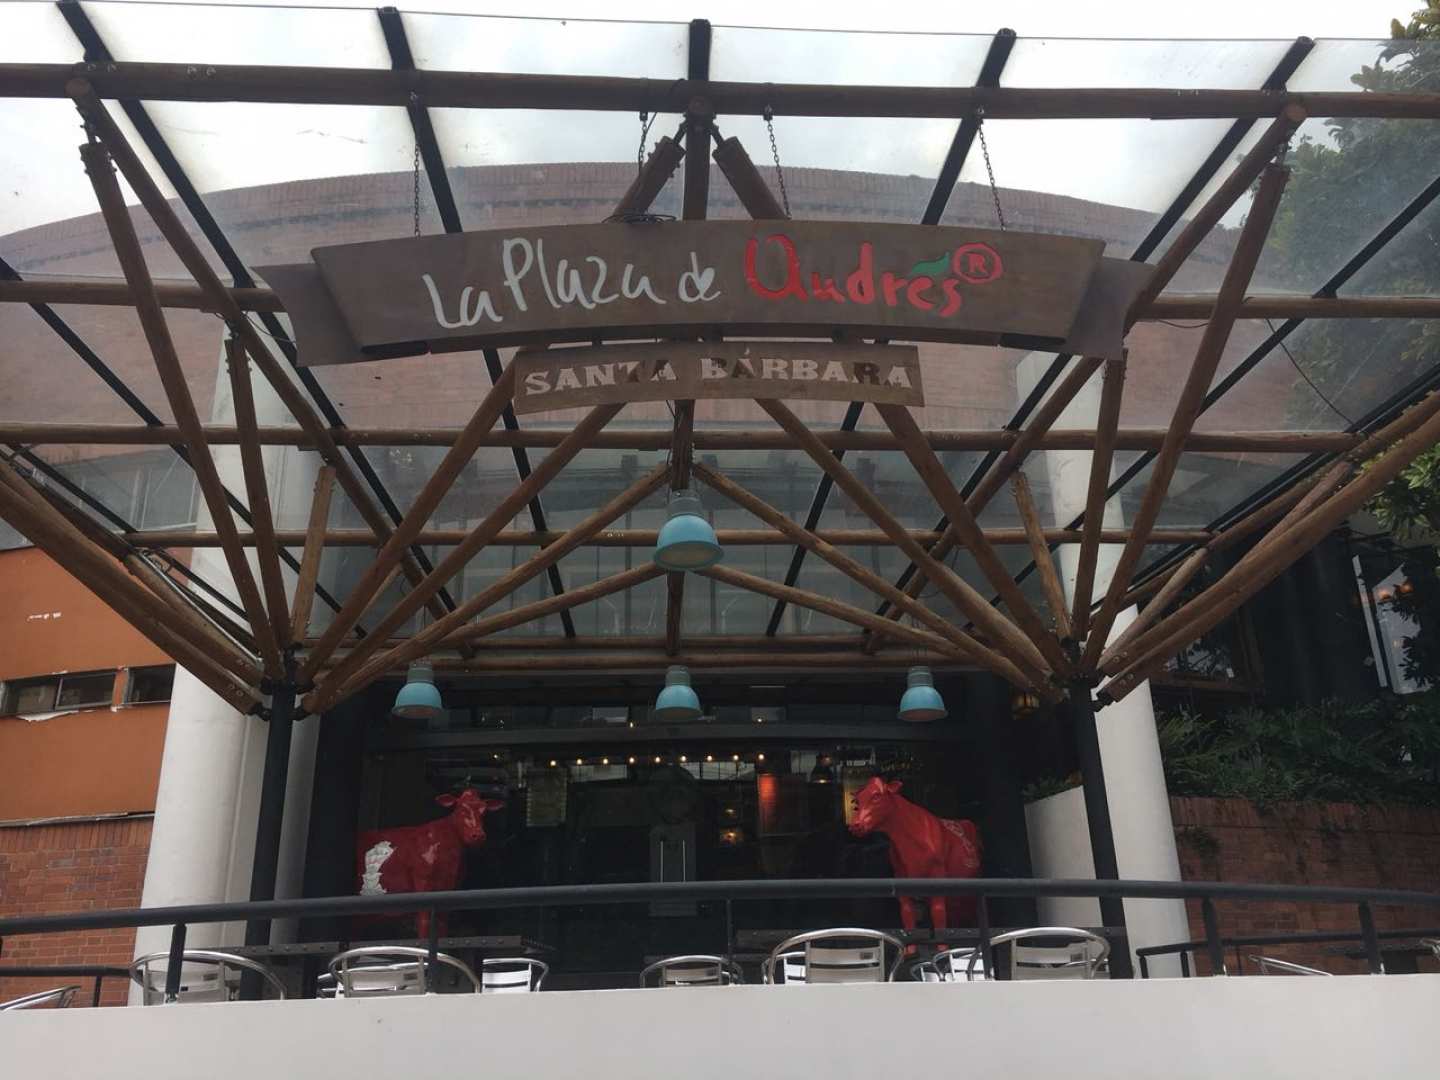 La Plaza de Andres (Santa Barbara)